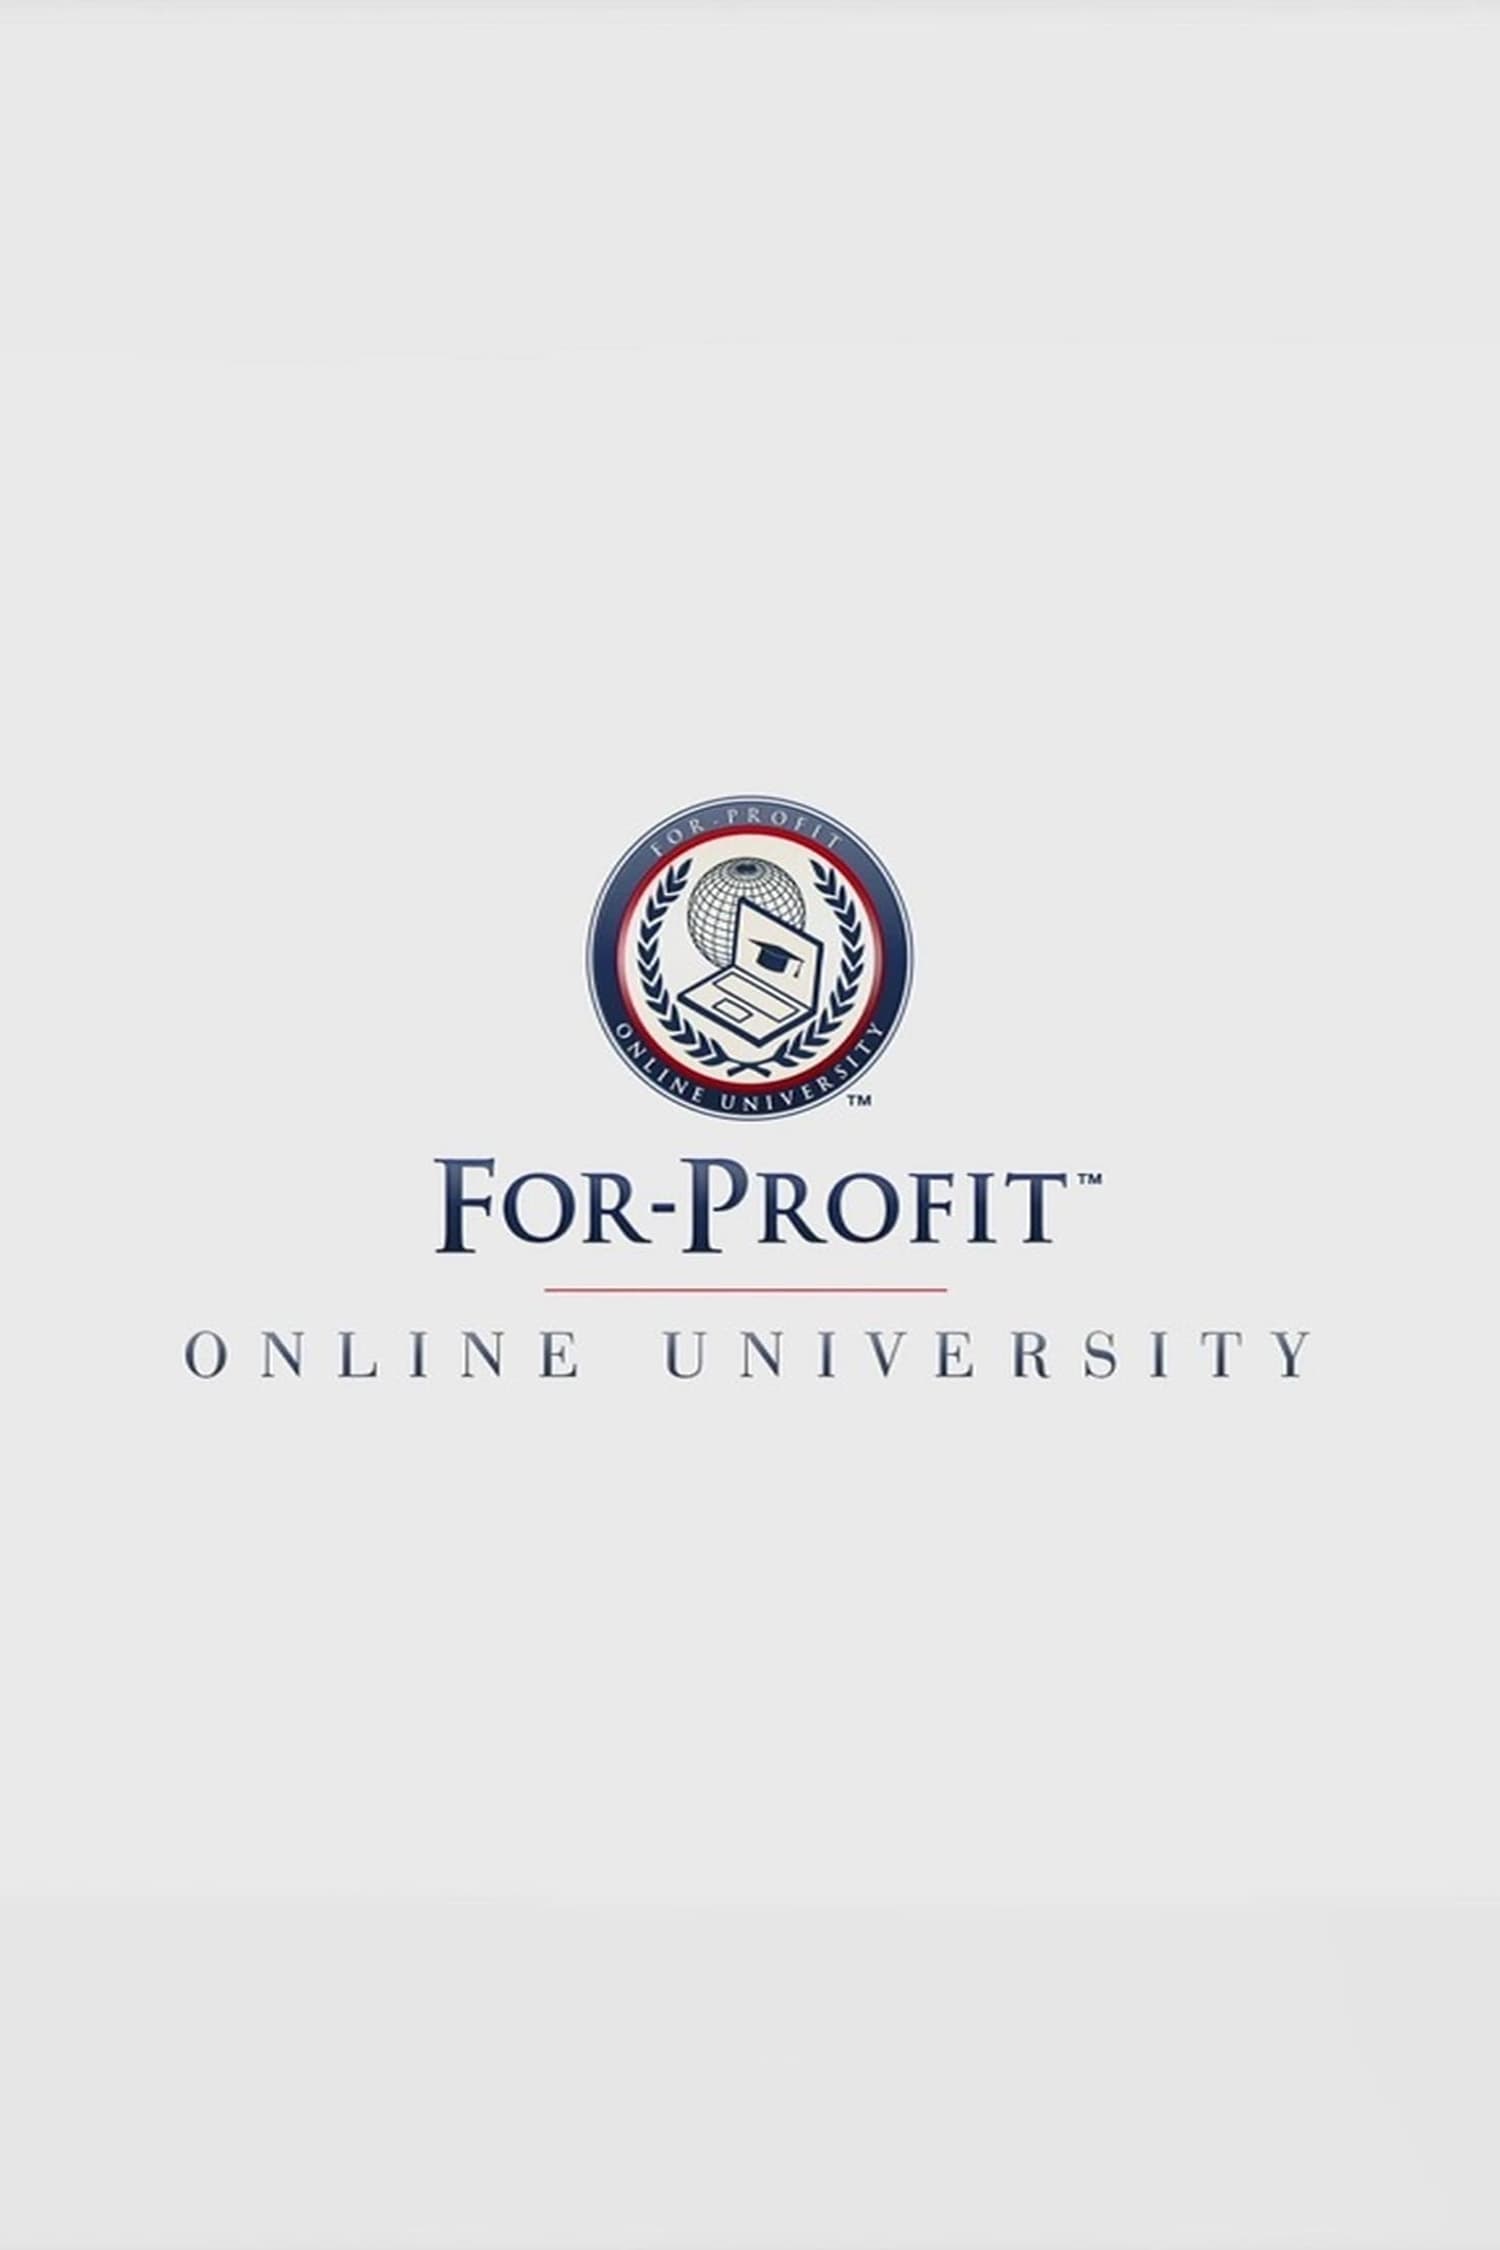 For-Profit Online University